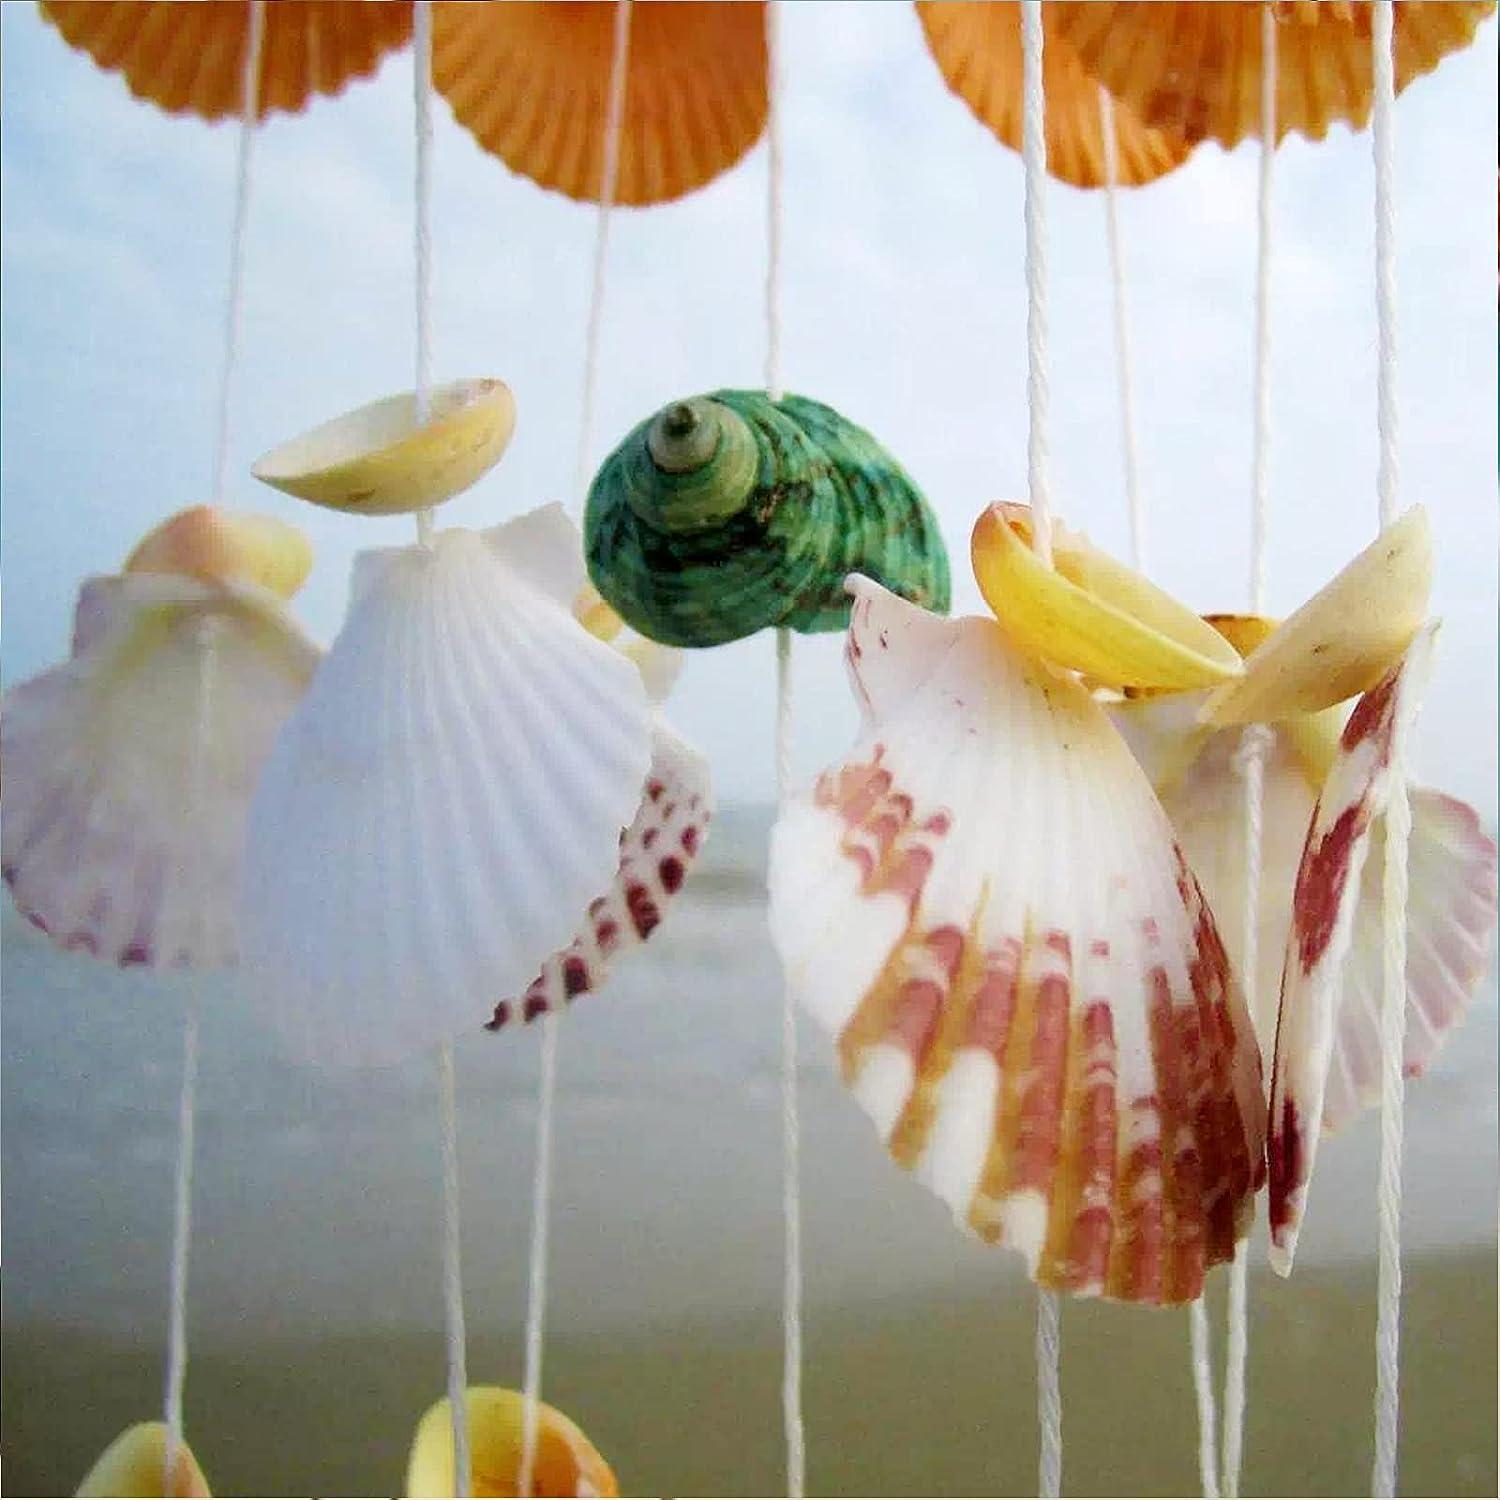 Natural Sea Shells Crafts, Sea Shells Decoration